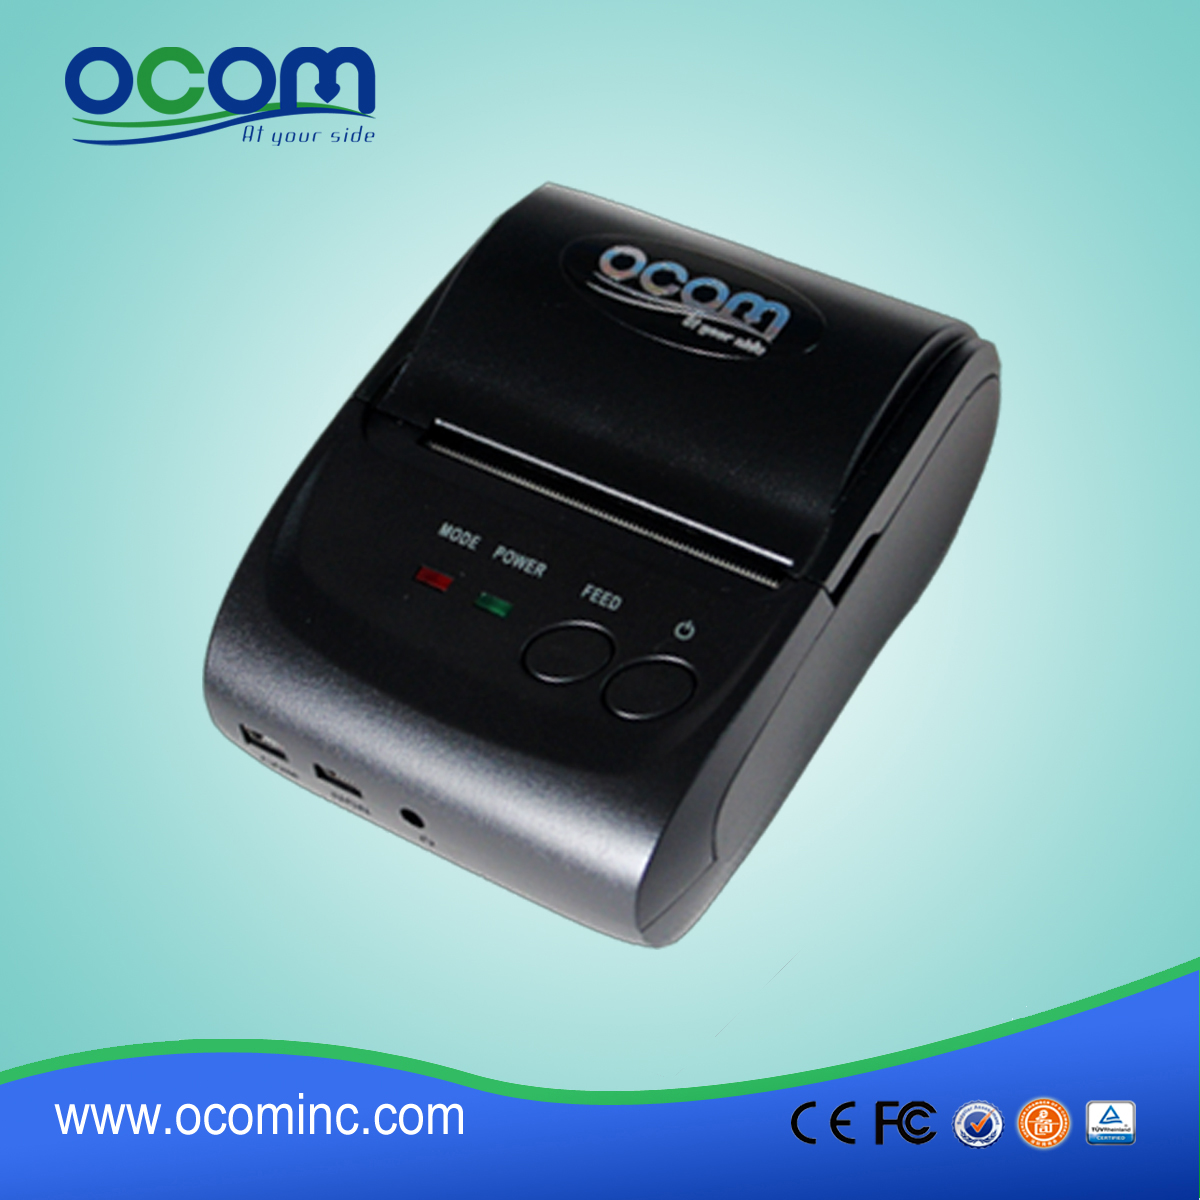 OCPP-M05: الروبوت بلوتوث 58mm وطابعة حرارية، رمز الاستجابة السريعة طابعة حرارية